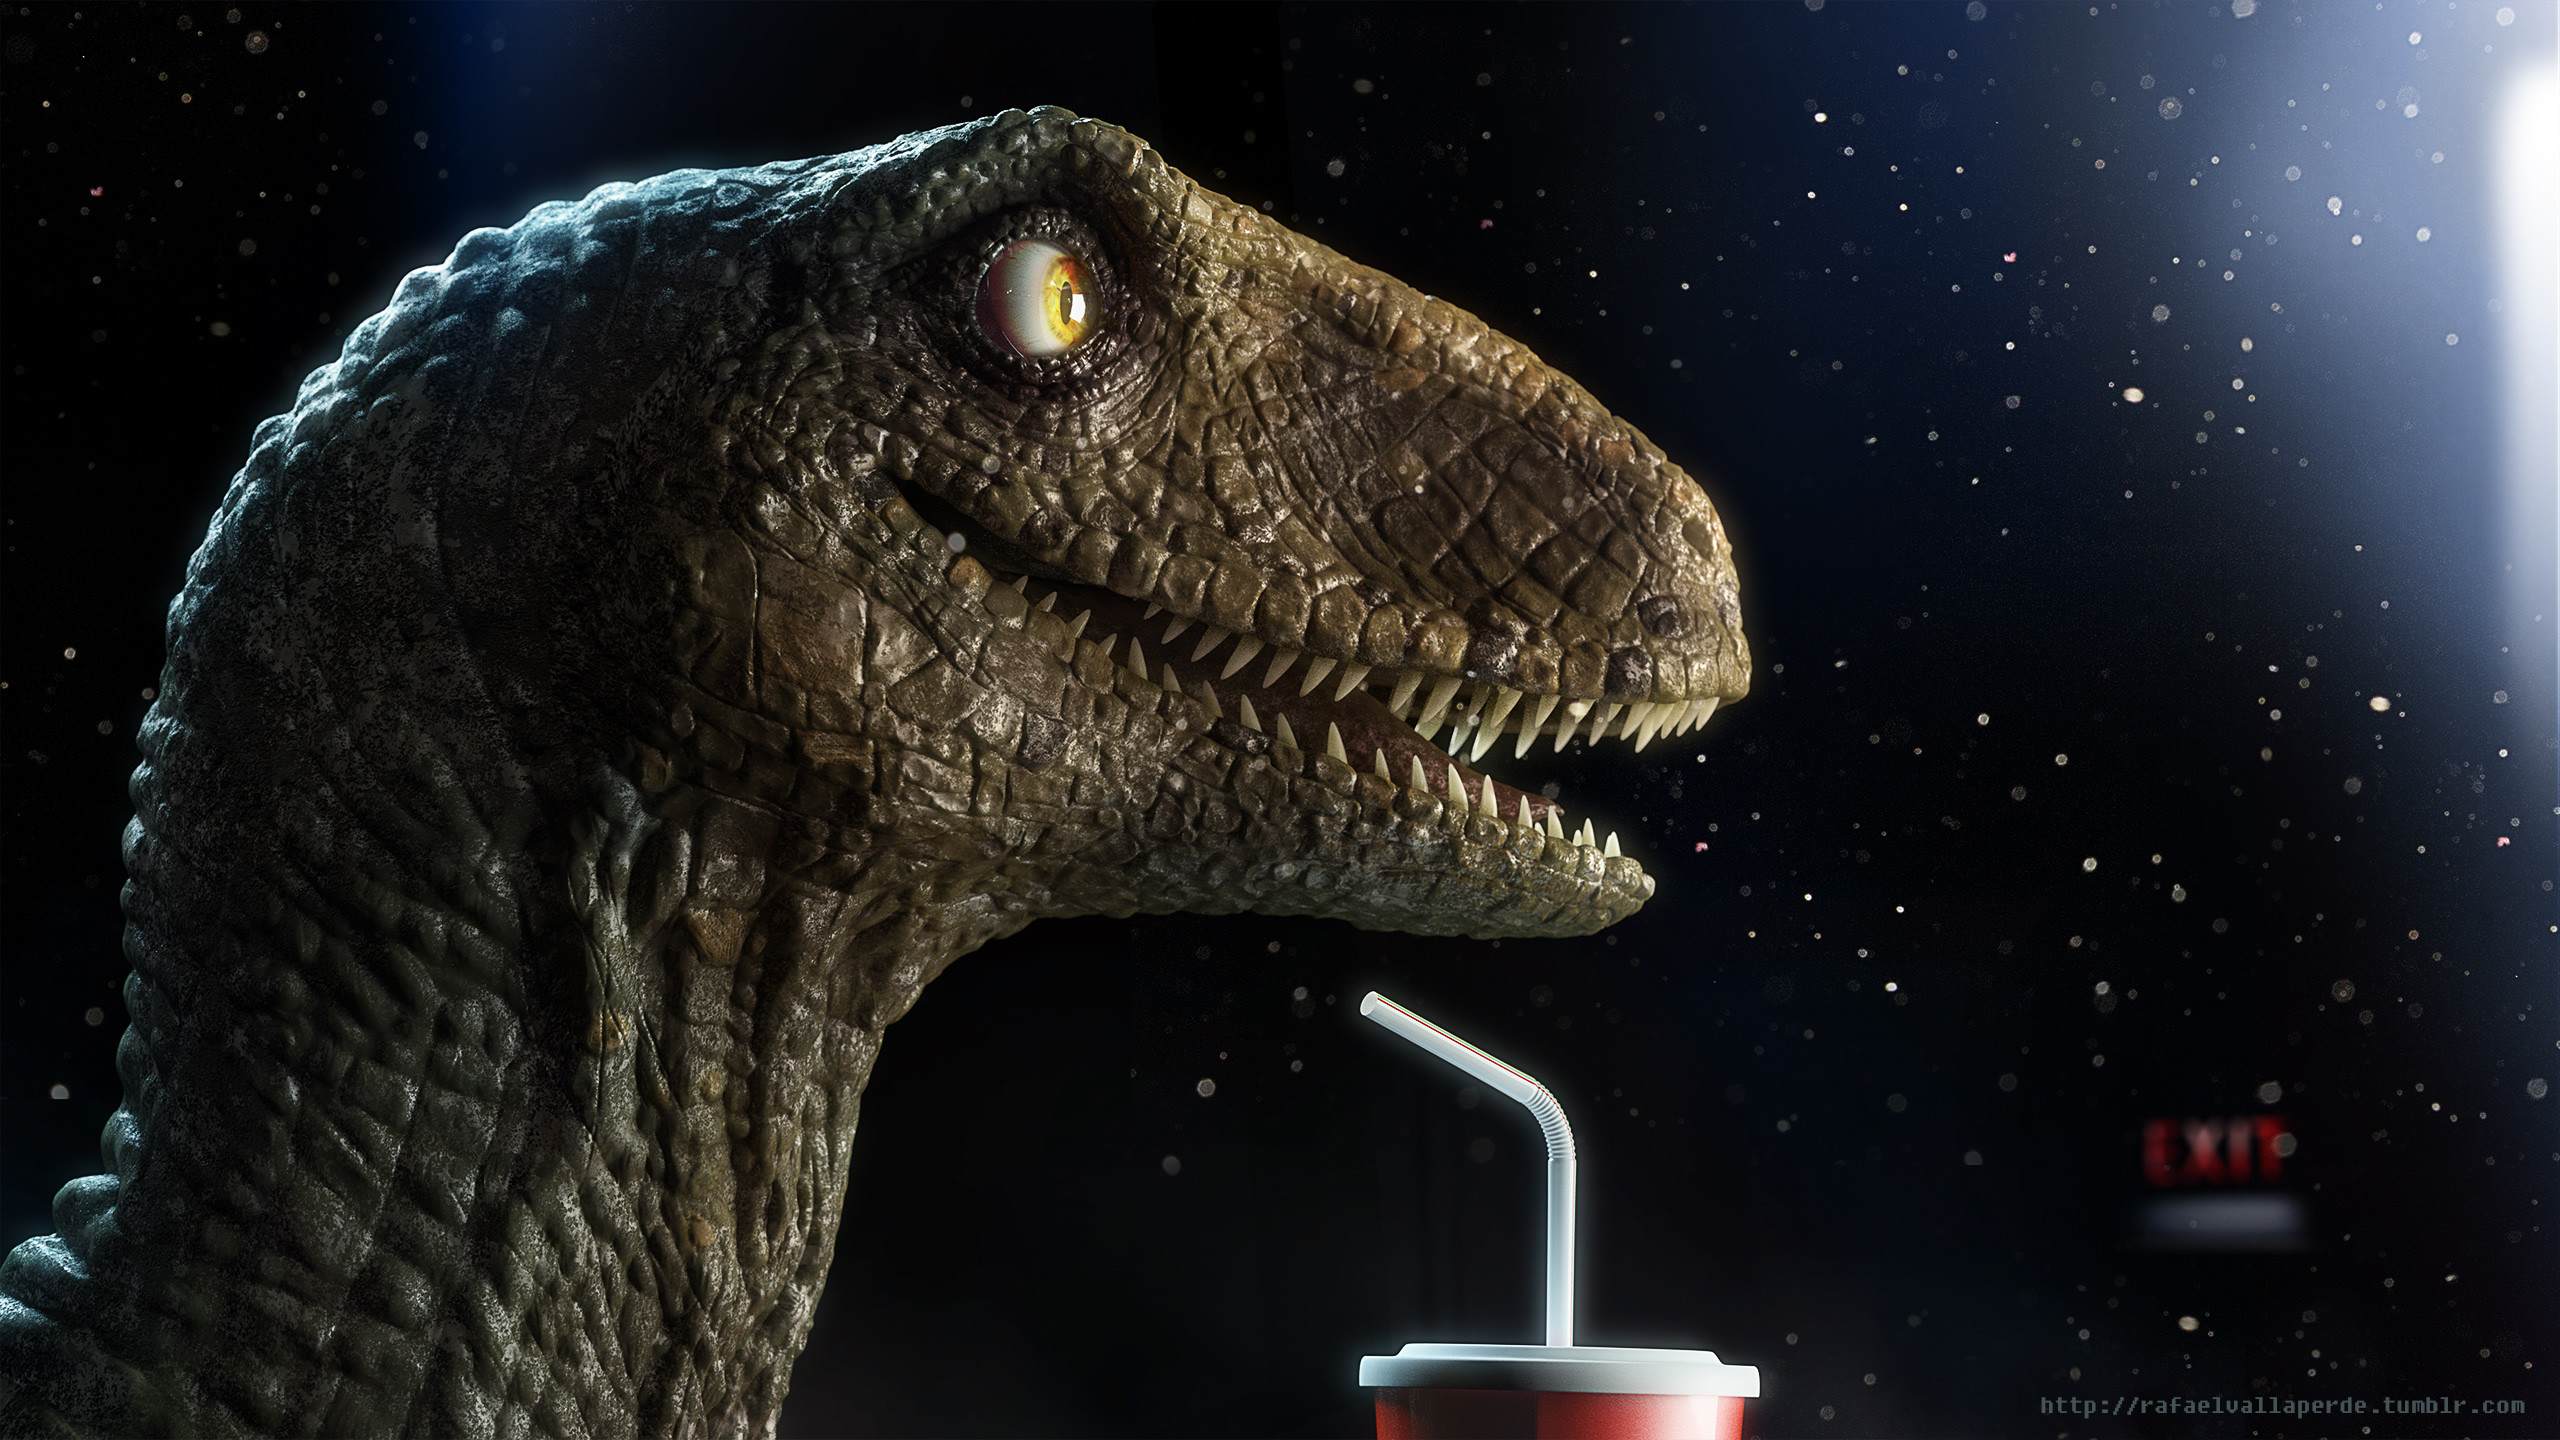 2560x1440 Happy raptor watching movie film cinema 3D CGI digital illustration  wallpapers raptors dinosaurs by Rafael Vallaperde